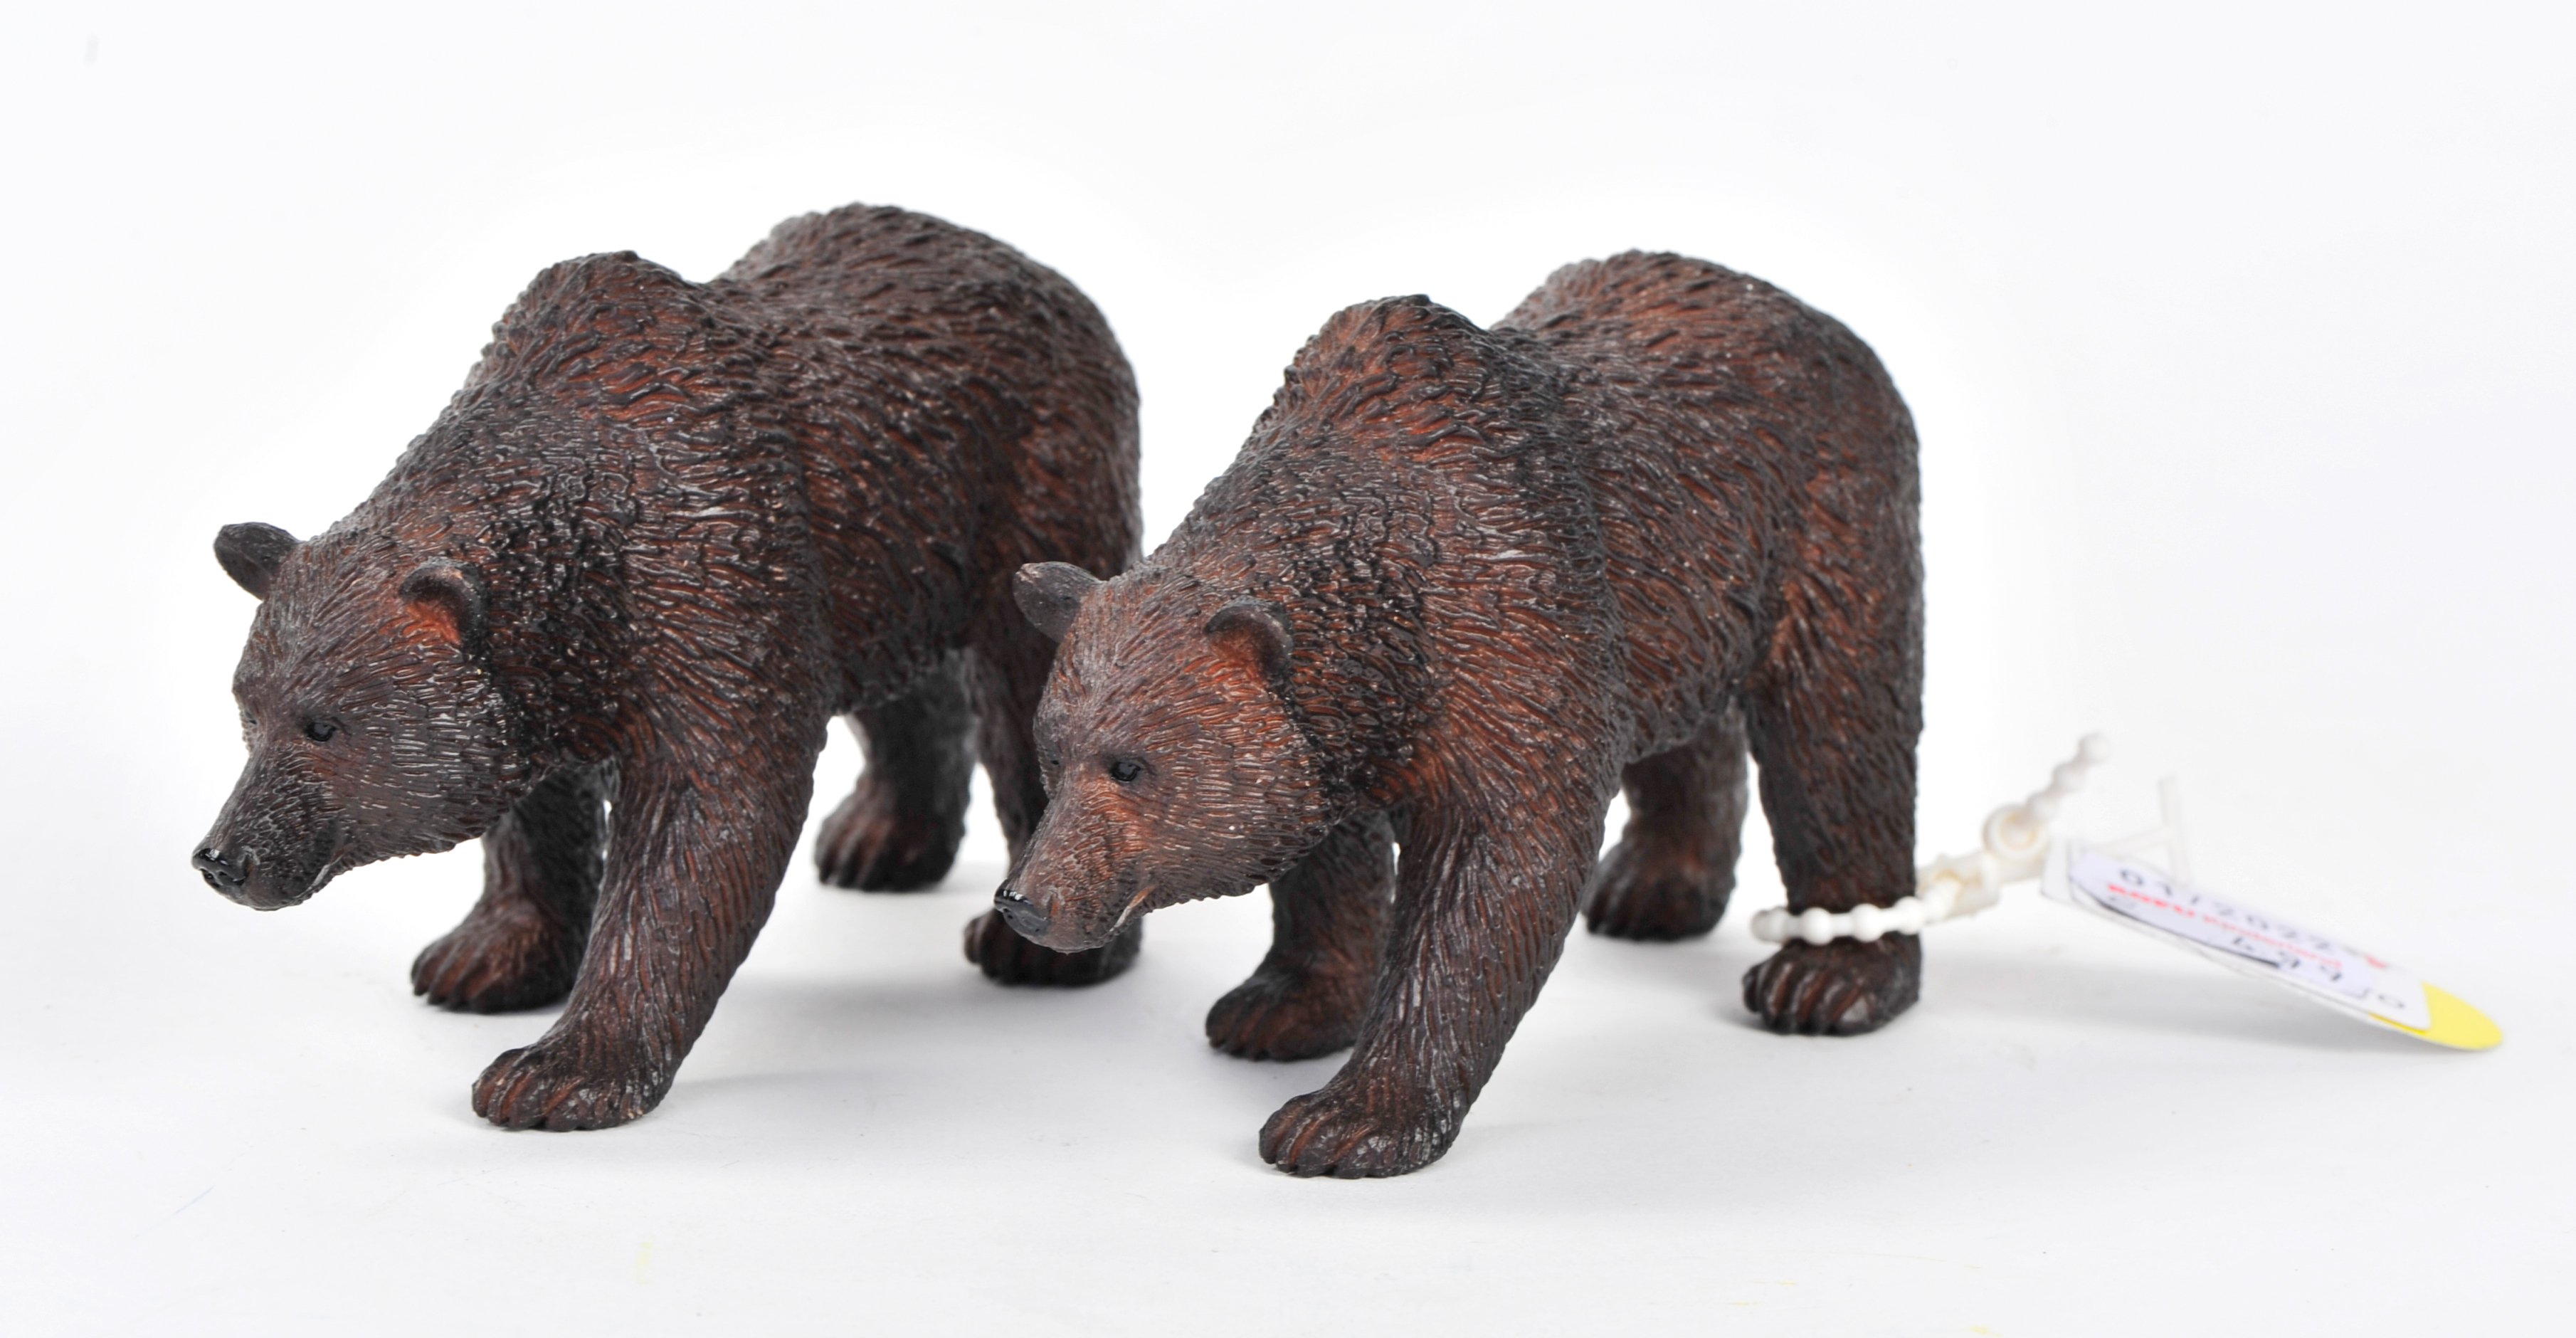 Bei der Spielzeugkette Rofu gibt es seit ein paar Jahren eine eigenen Marke für Figuren: Besttoy Woodland. Die beiden abgebildeten Bären sind unter der Nummer 387216 für je 4,99 EUR (Stand 7.1.2023) zu haben. 